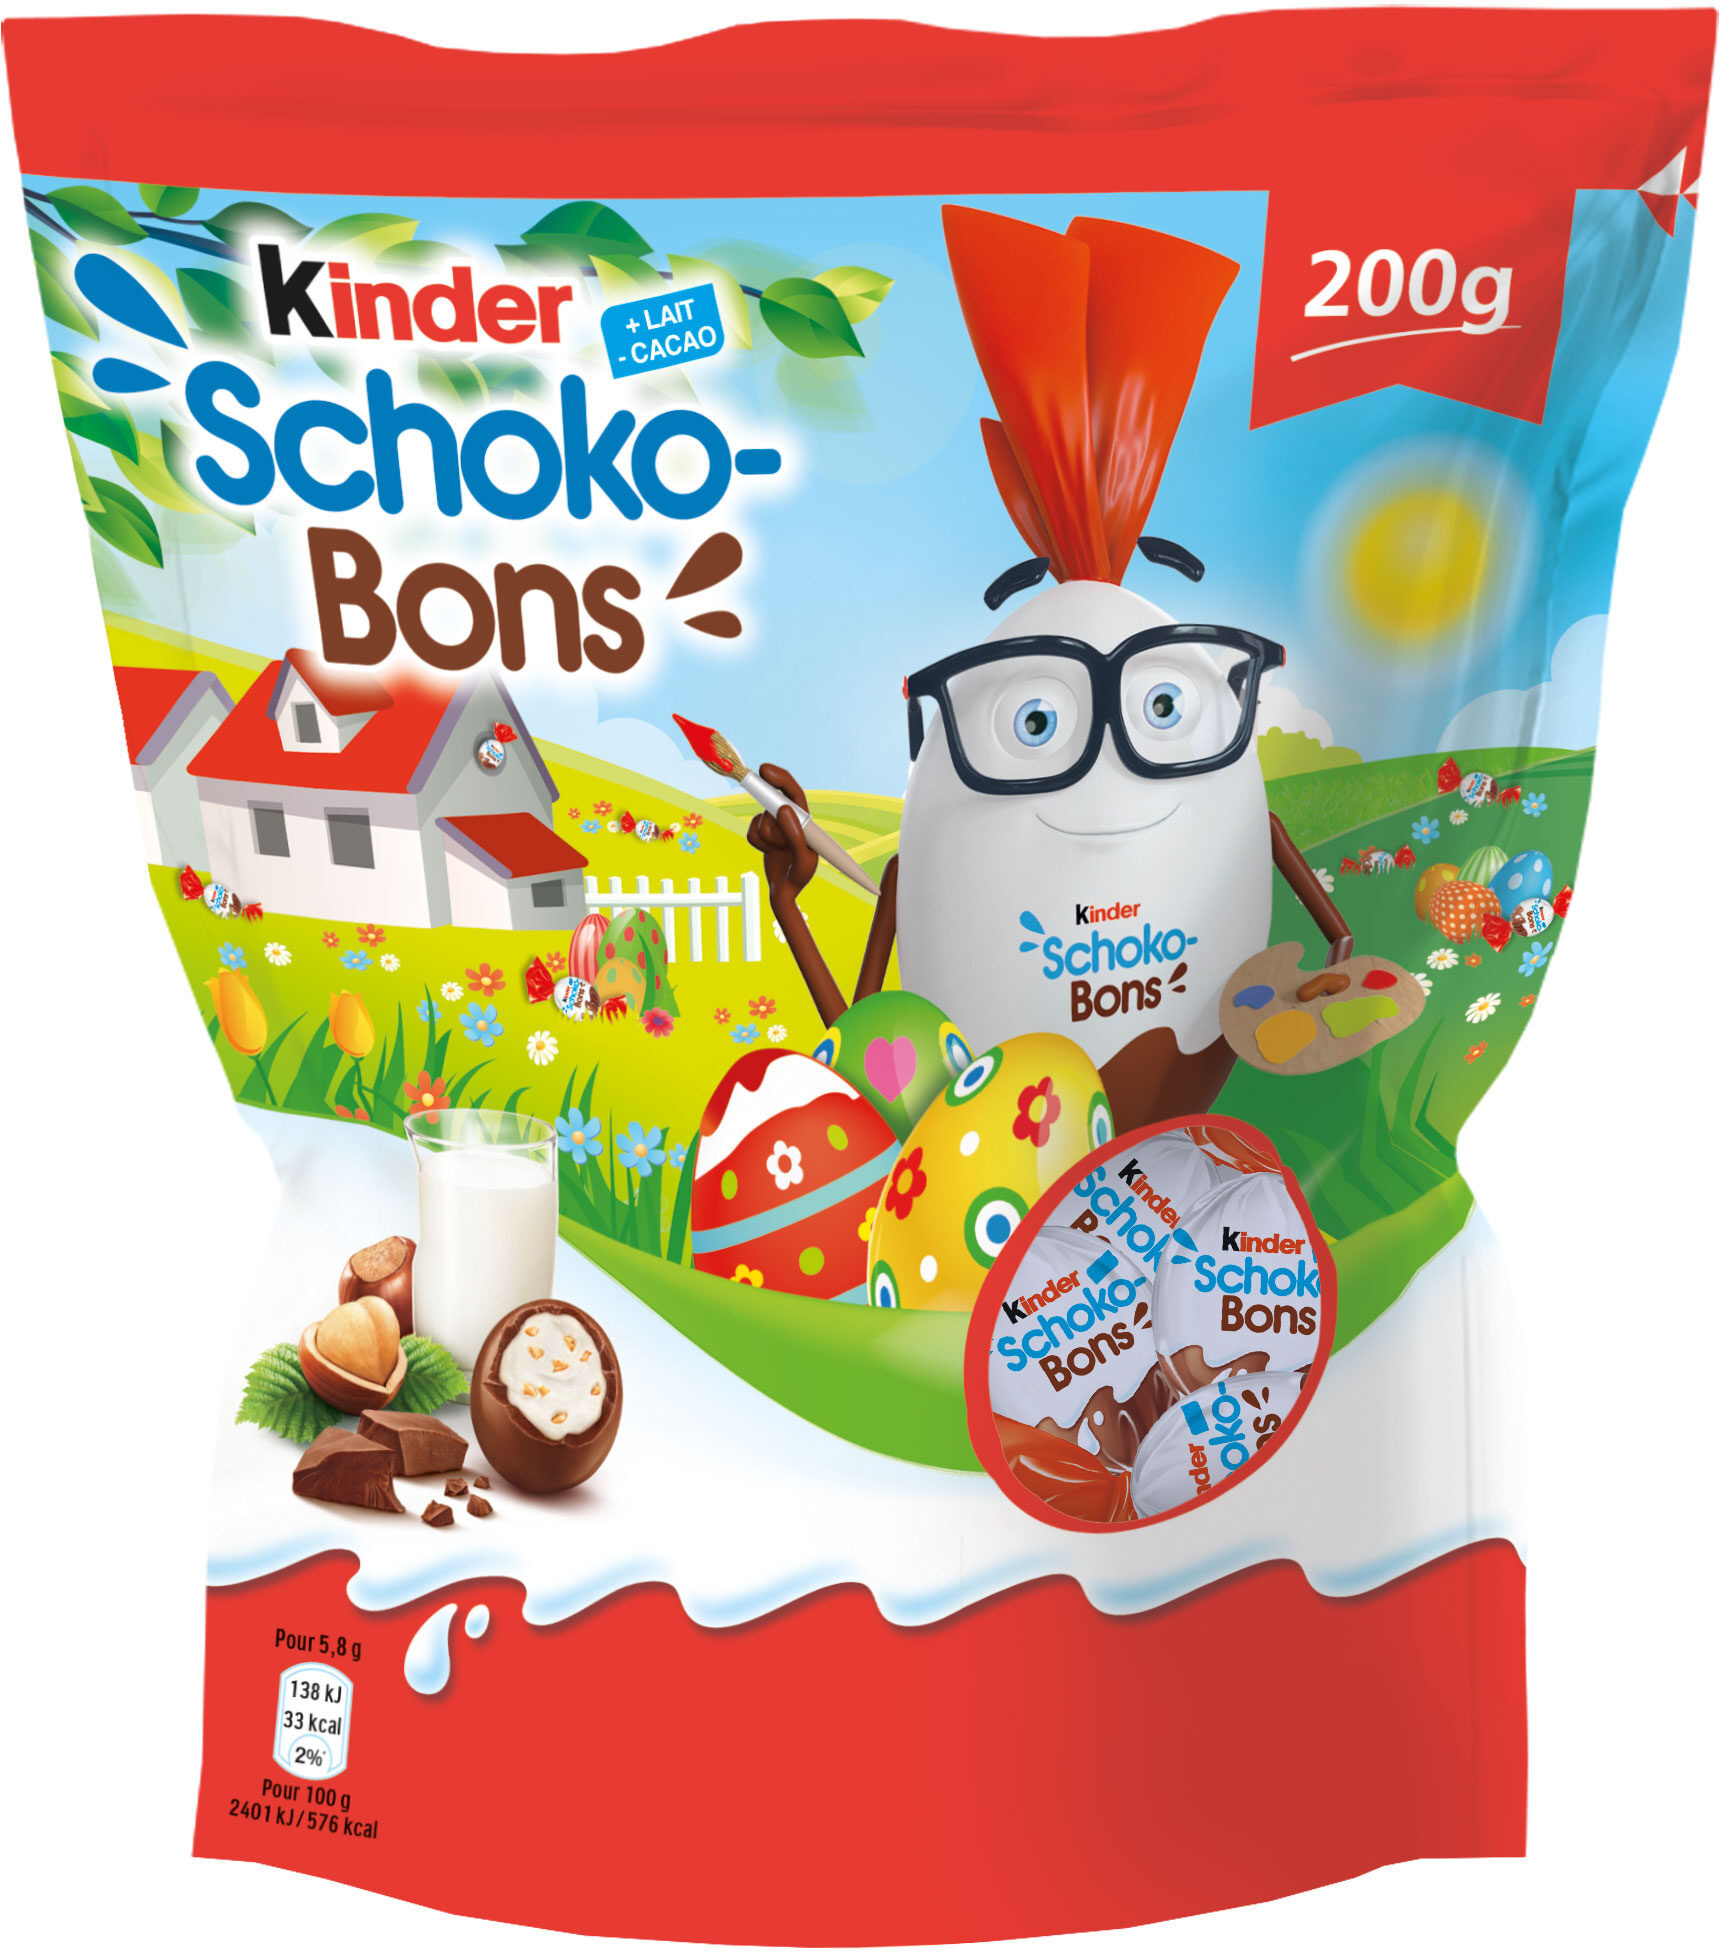 Kinder Schoko-Bons - Producte - en